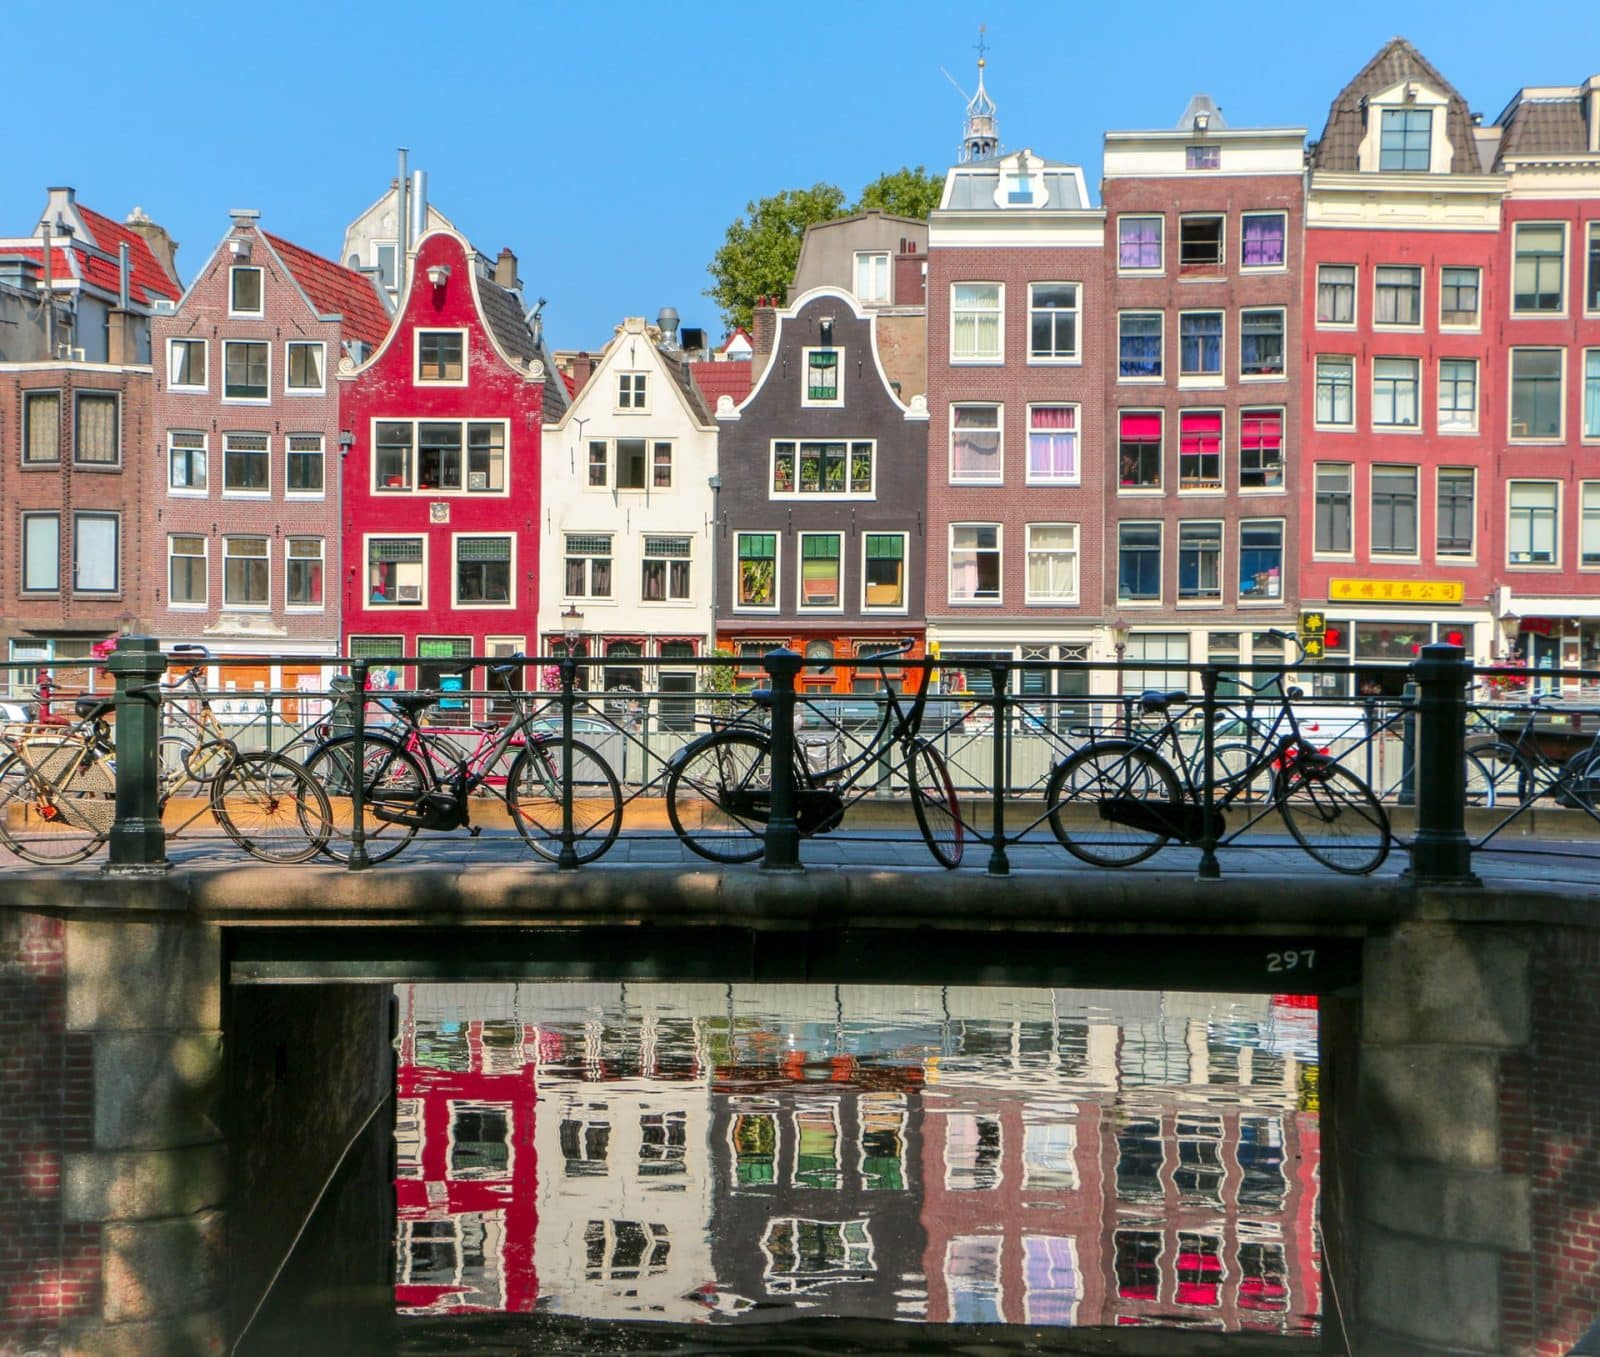 Dónde dormir en Ámsterdam: Mejores zonas y hoteles